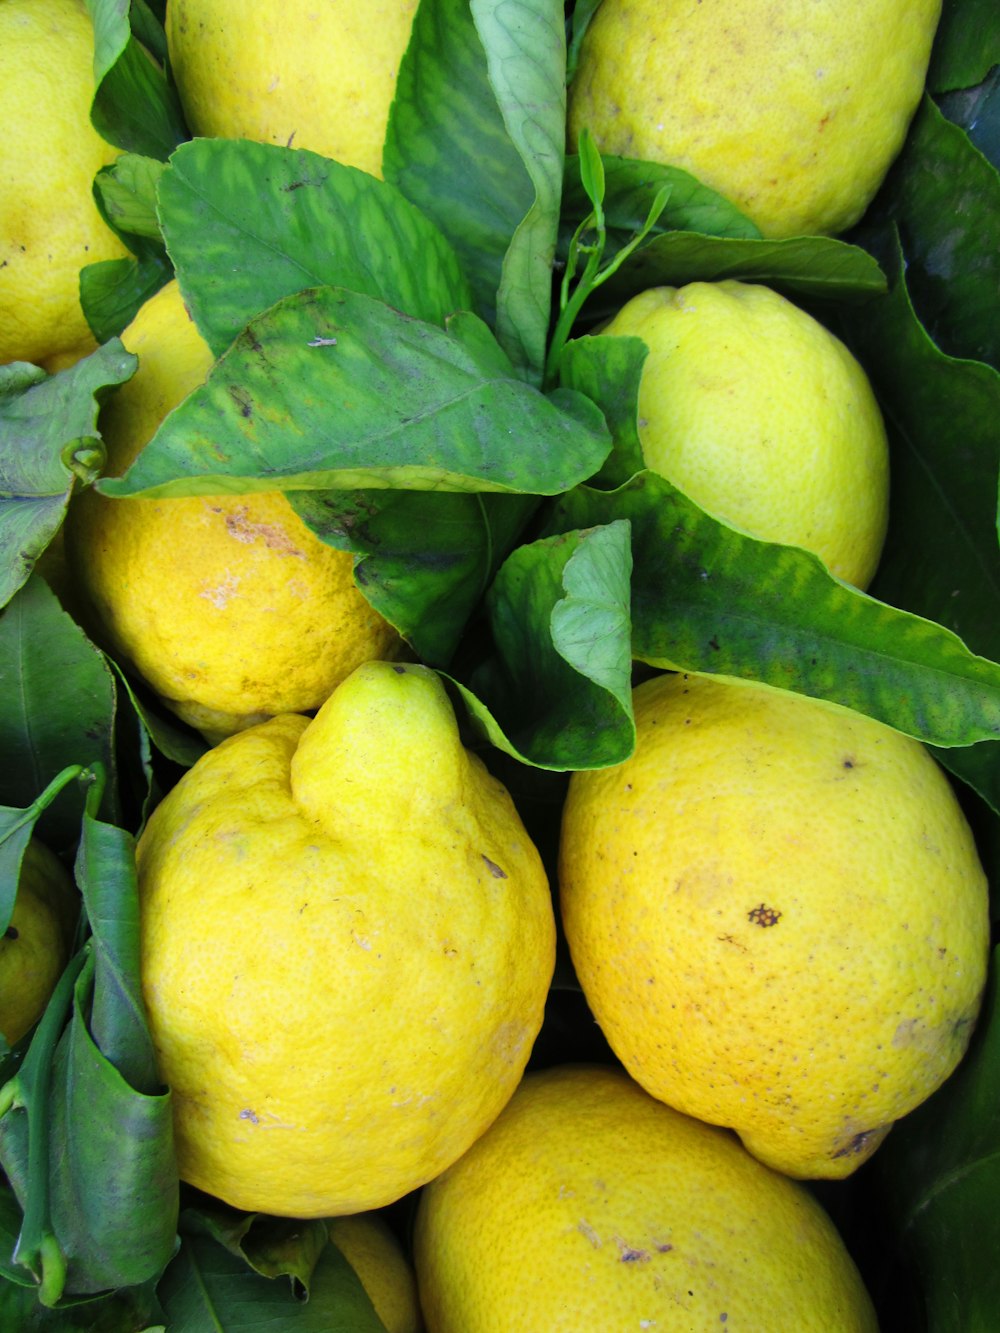 yellow lemon fruit on green leaves